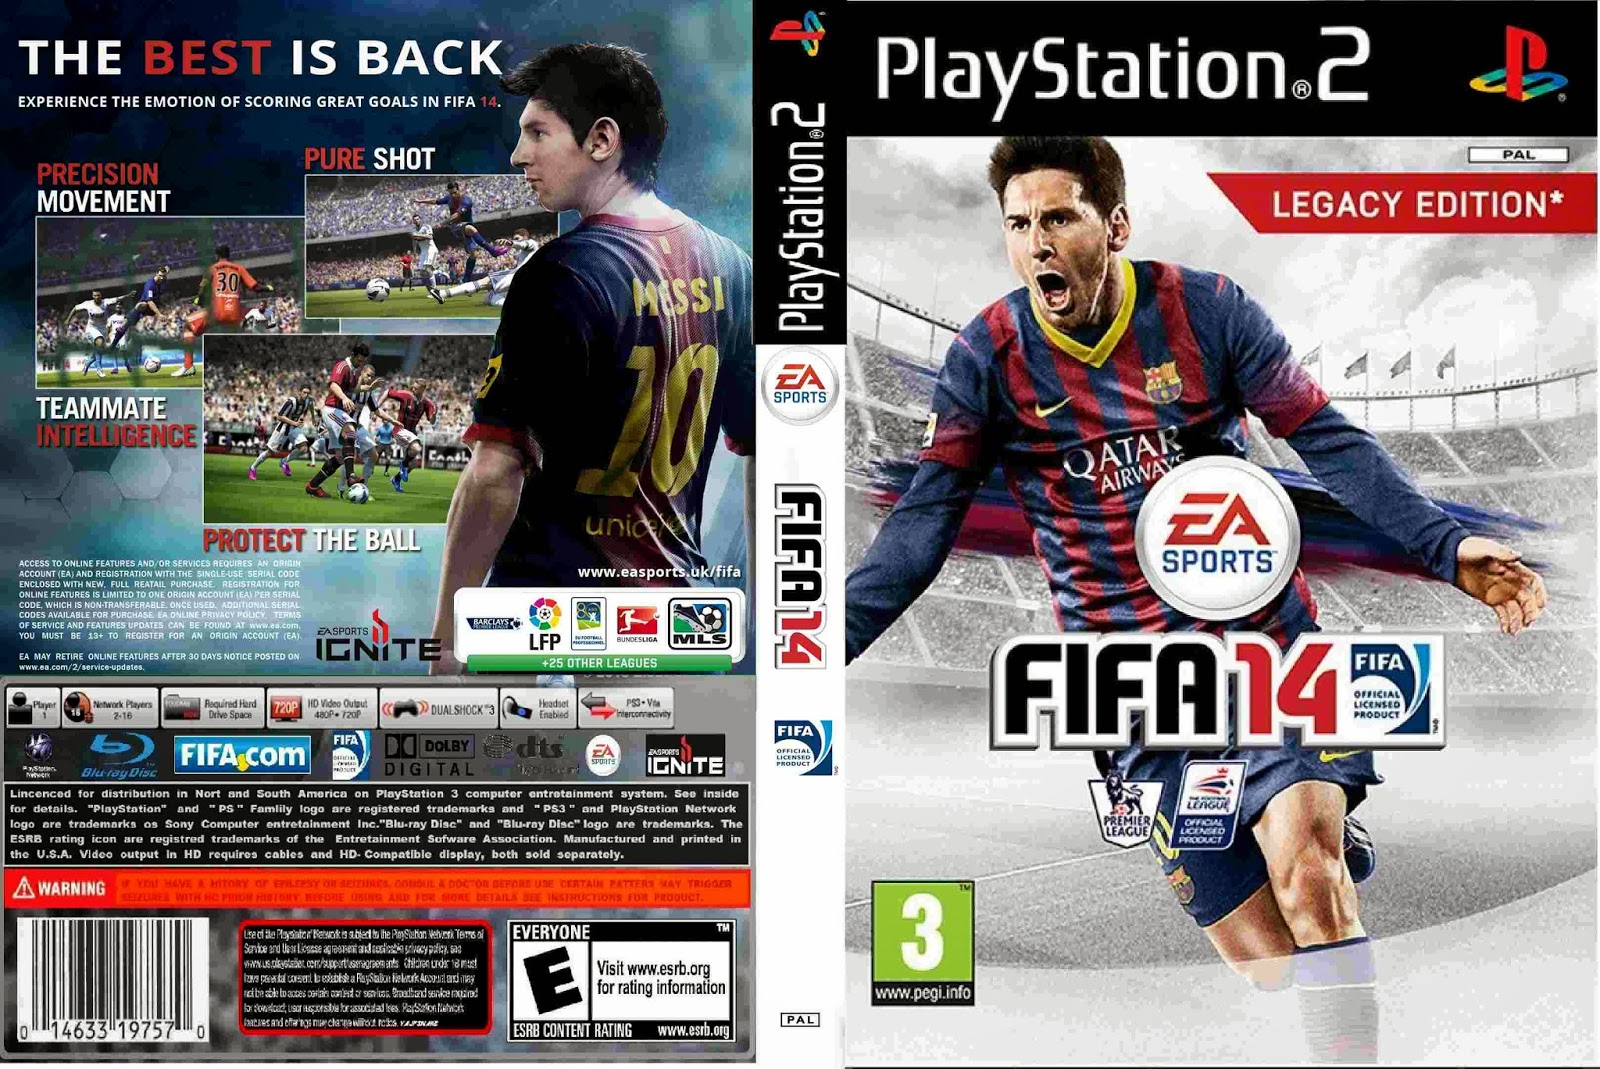 Fifa ps2. ФИФА 14 на ПС 2. FIFA 14 Legacy Edition ps2. Sony PLAYSTATION 2 ФИФА. FIFA 2015 ps2.